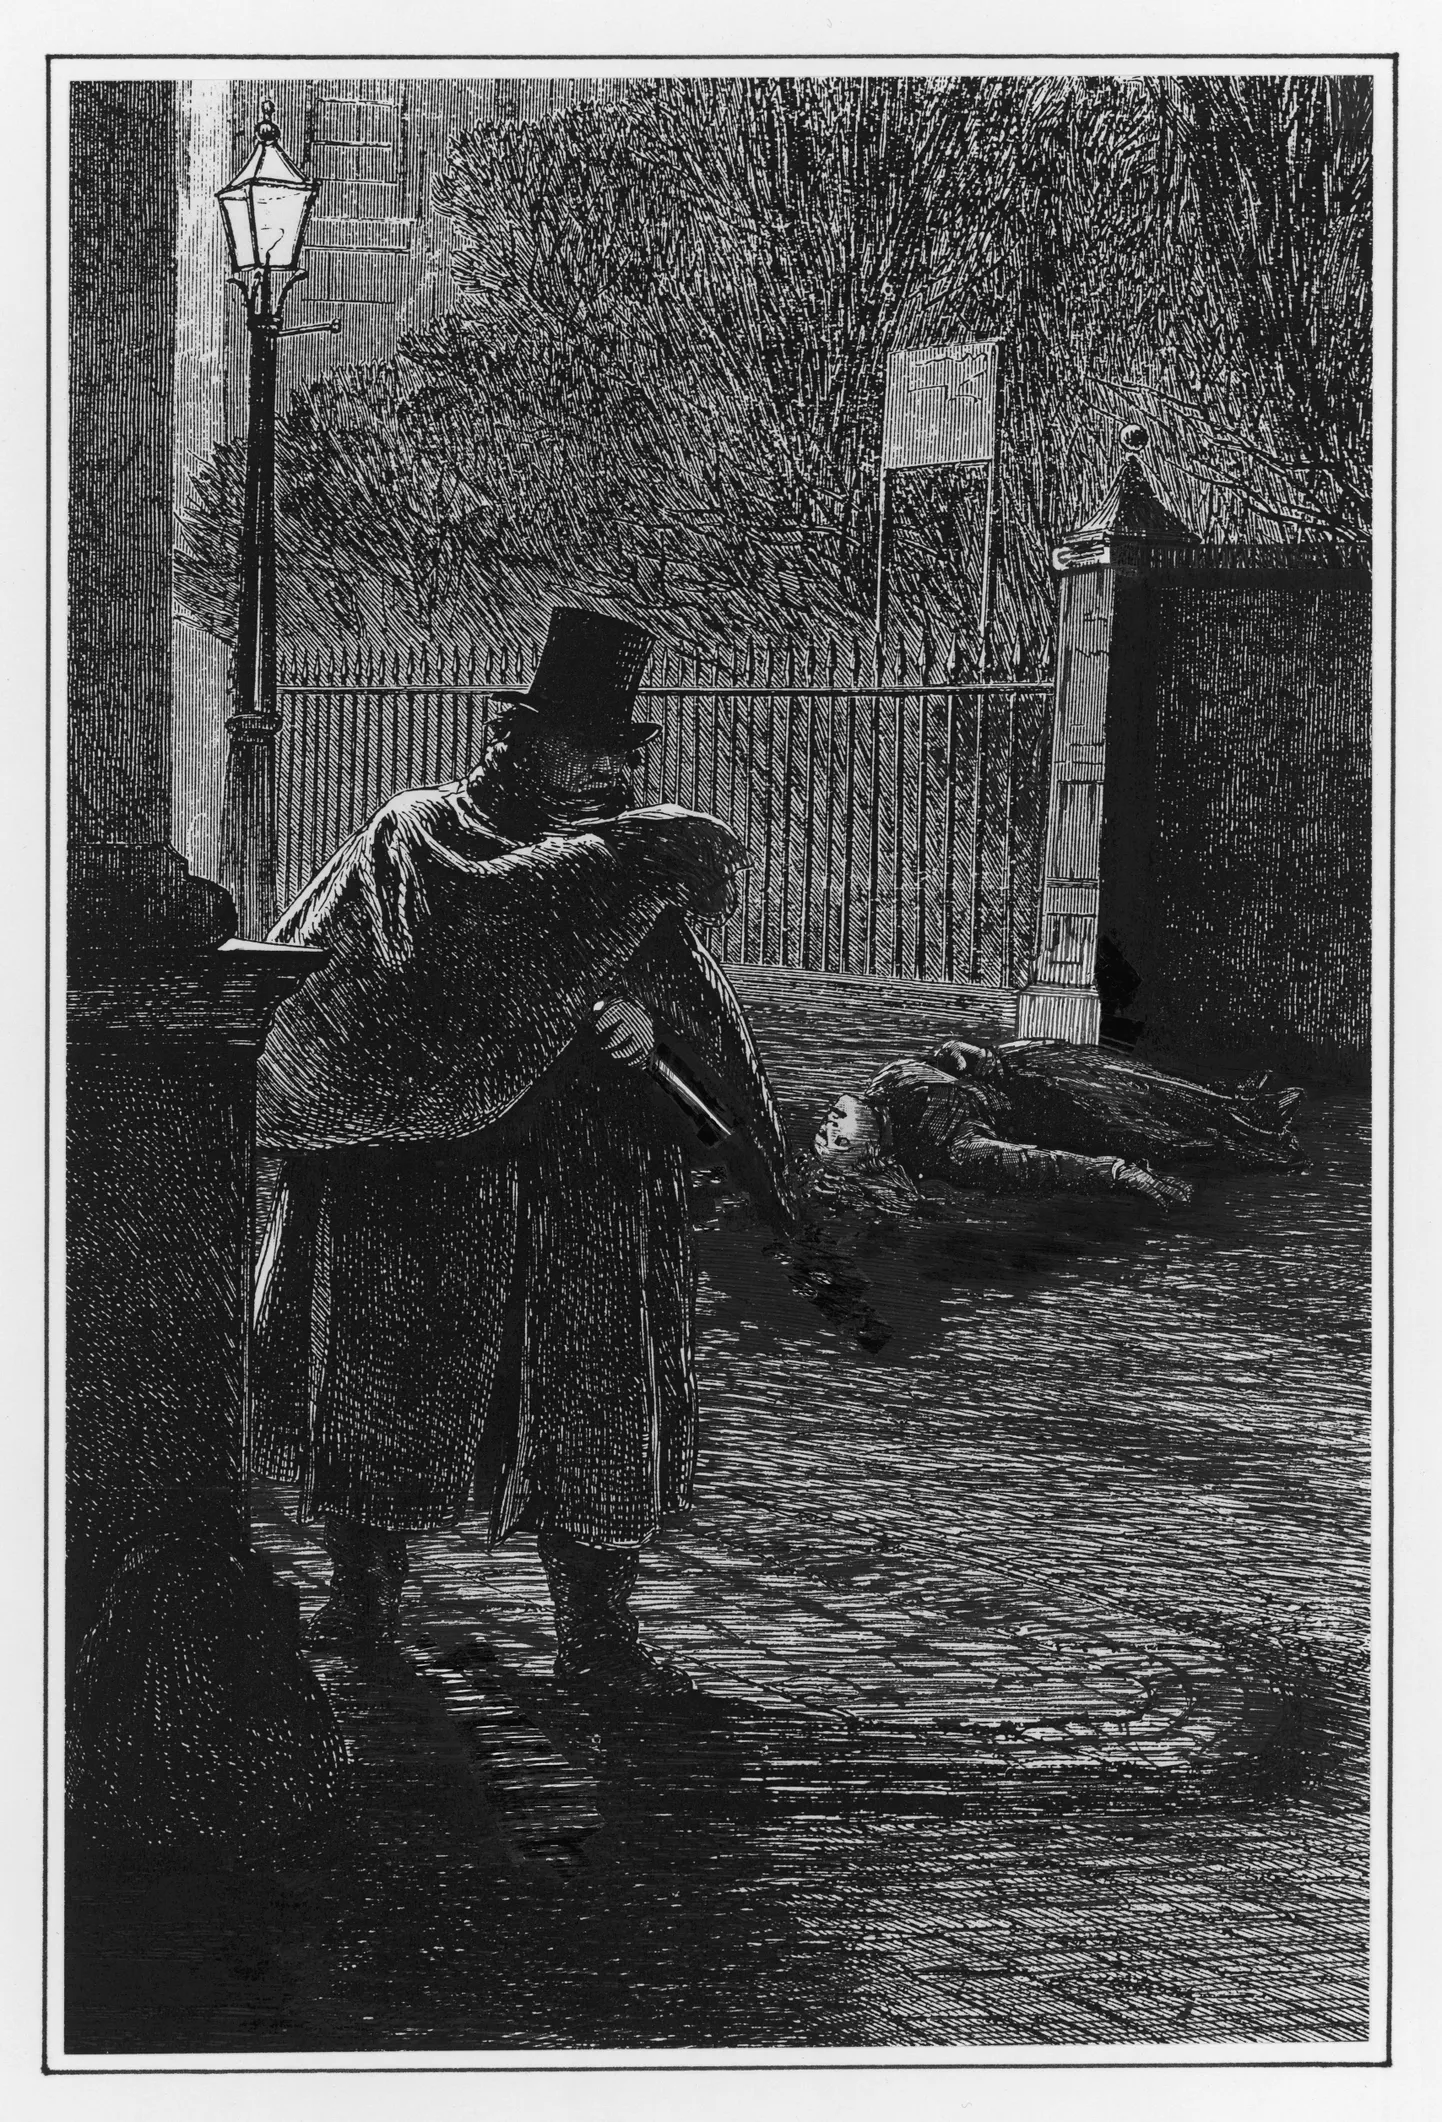 Briti 19.sajandi ajaleheillustratsioon, millel on kujutatud Rappija-Jacki ja tema ohvrit